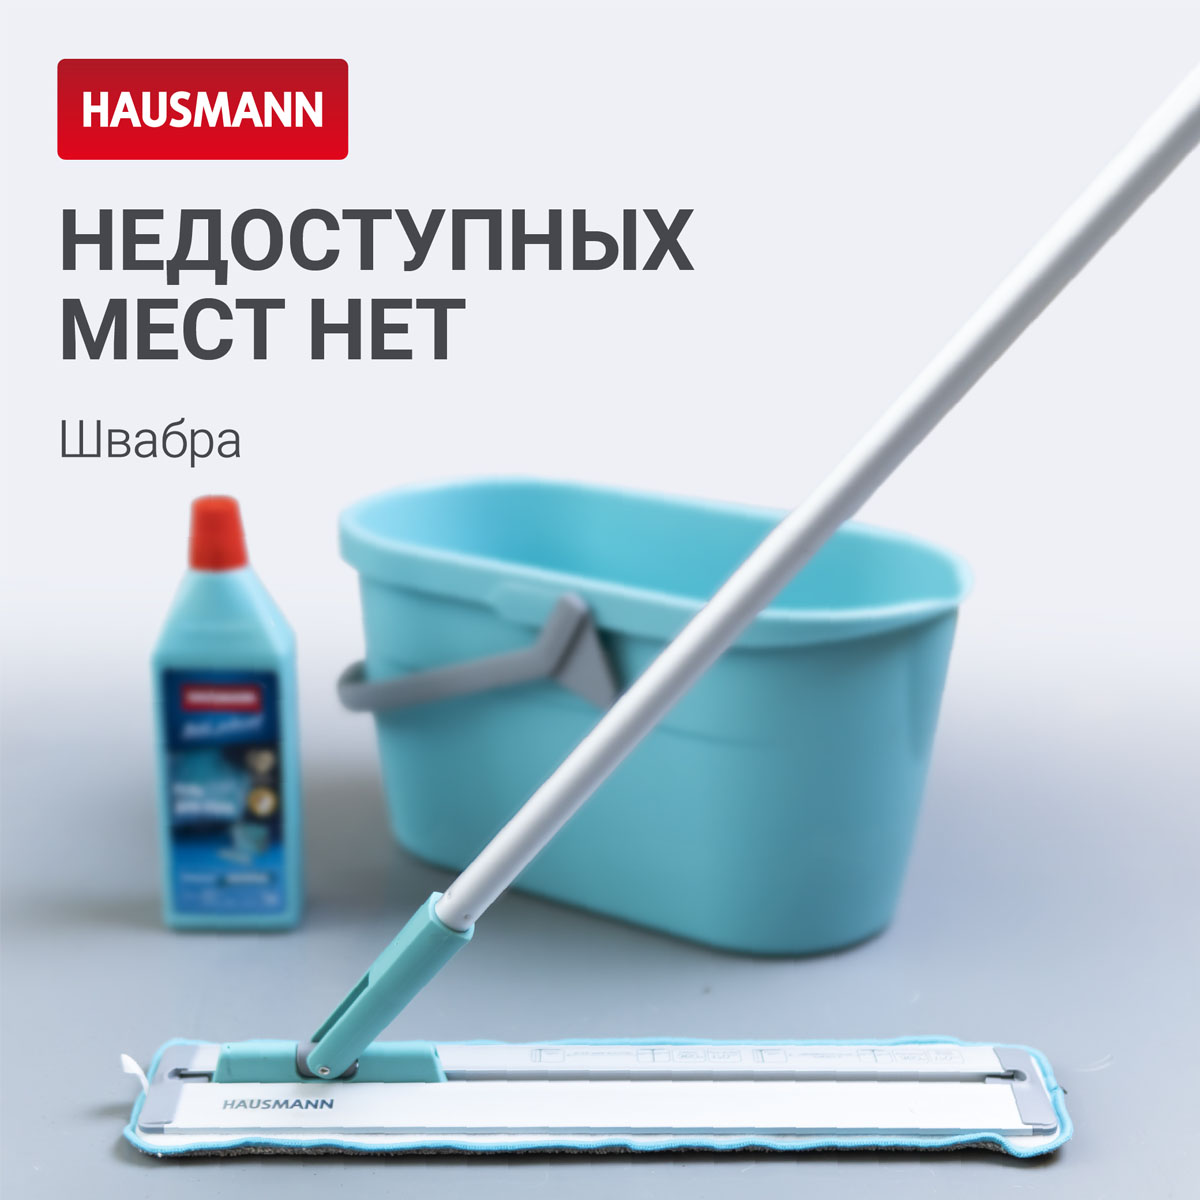 Швабра для влажной уборки Hausmann Cosmic Classic Home Slider с телескопической ручкой и слайд-механизмом Hausmann HM-45R